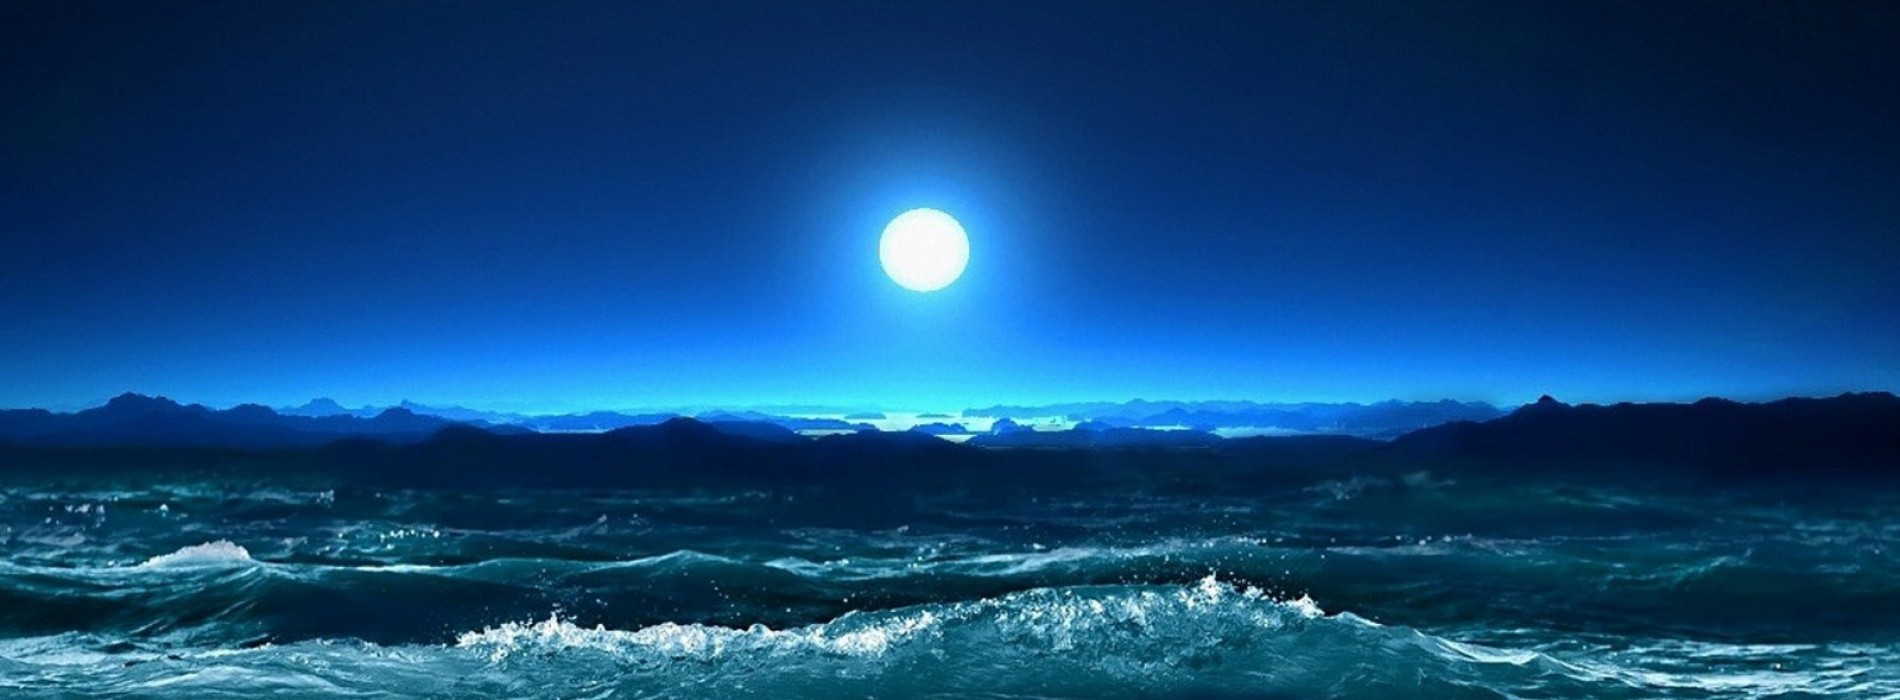 belle lumière de lune amour hd fonds d'écran,ciel,la nature,clair de lune,océan,vague